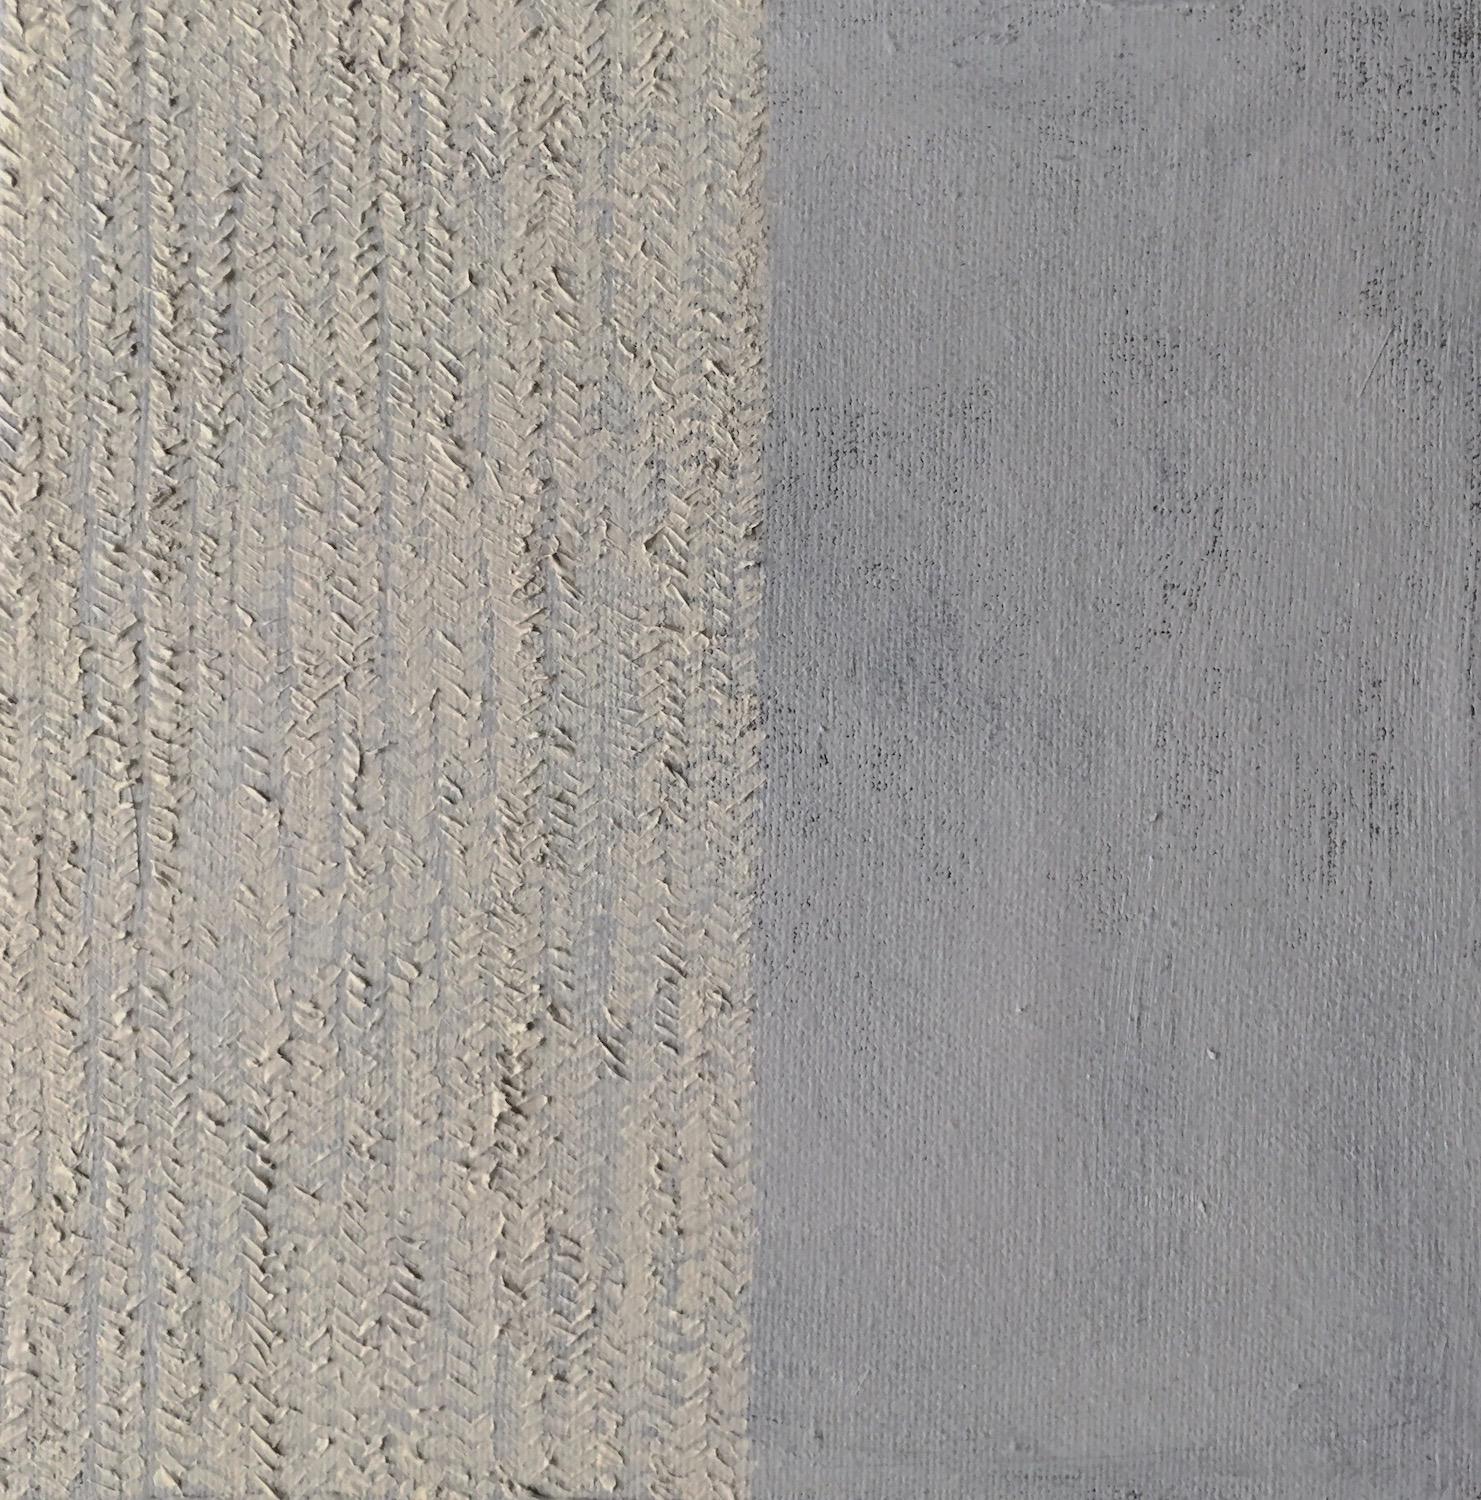 Untitled (Abstract 20) Minimal, strukturiert, grau, beige, neutral